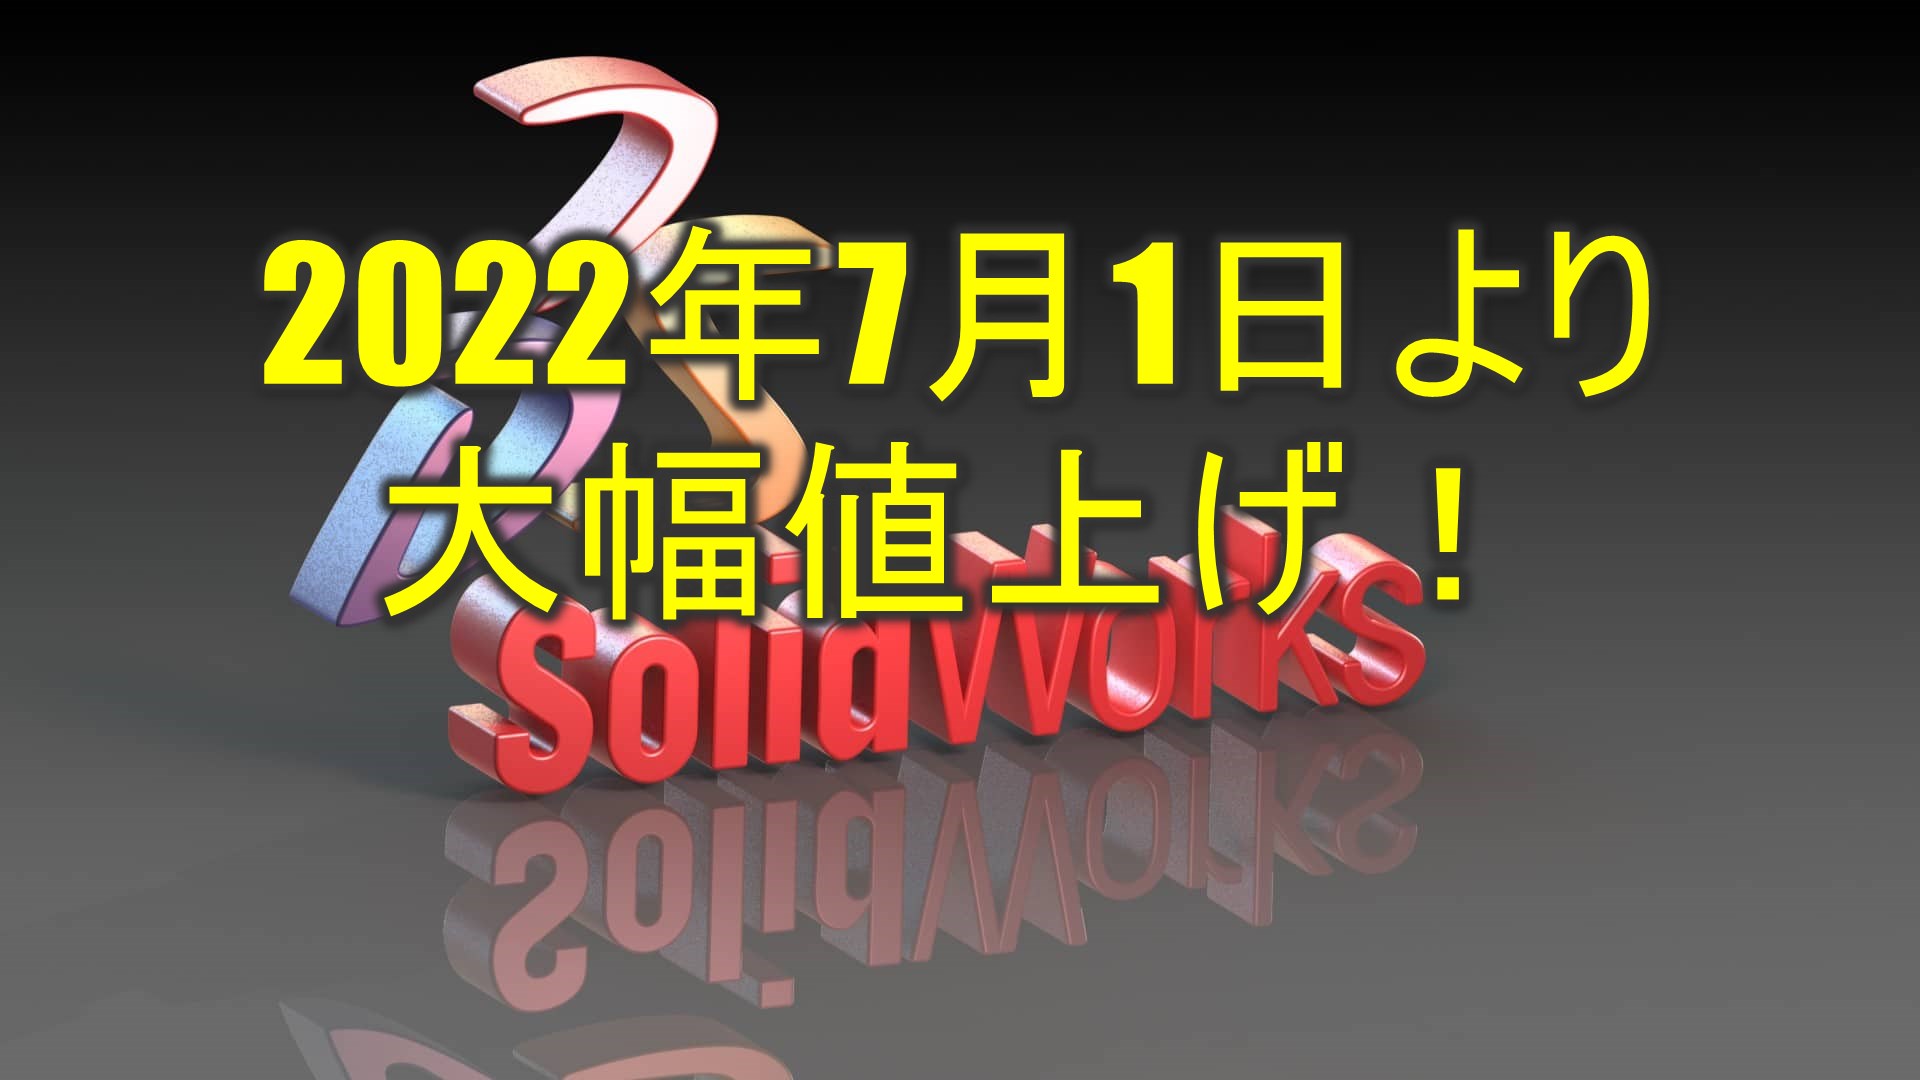 SolidWorks（ソリッドワークス）の価格が2022年7月より改定されます 